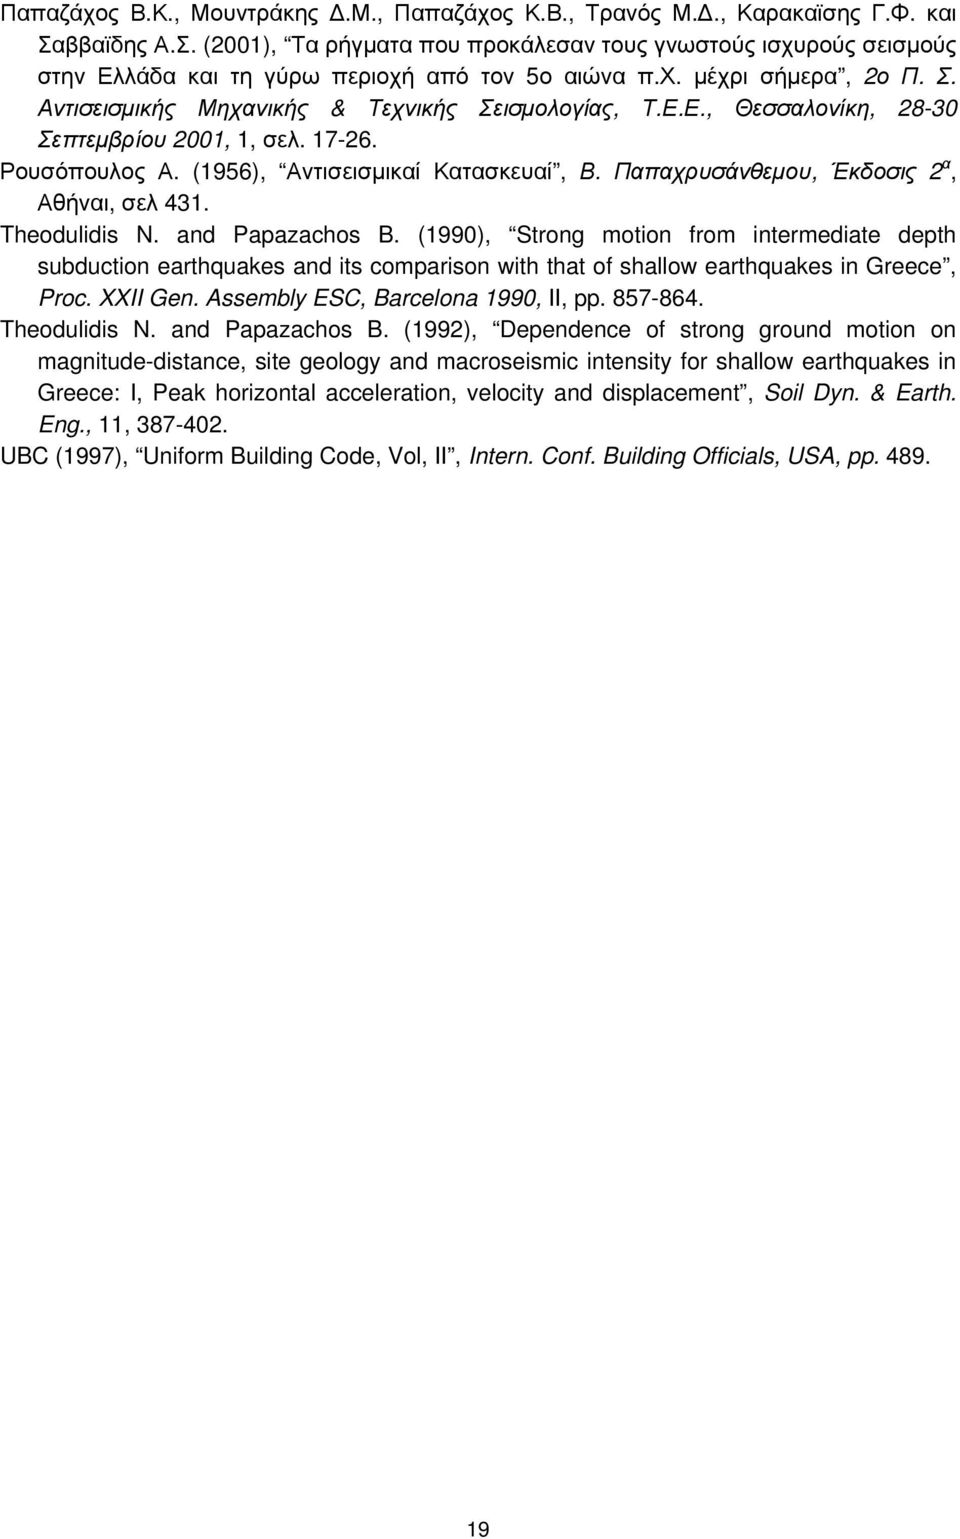 Αντισεισμικής Μηχανικής & Τεχνικής Σεισμολογίας, Τ.Ε.Ε., Θεσσαλονίκη, 28-30 Σεπτεμβρίου 2001, 1, σελ. 17-26. Ρουσόπουλος Α. (1956), Αντισεισμικαί Κατασκευαί, Β.